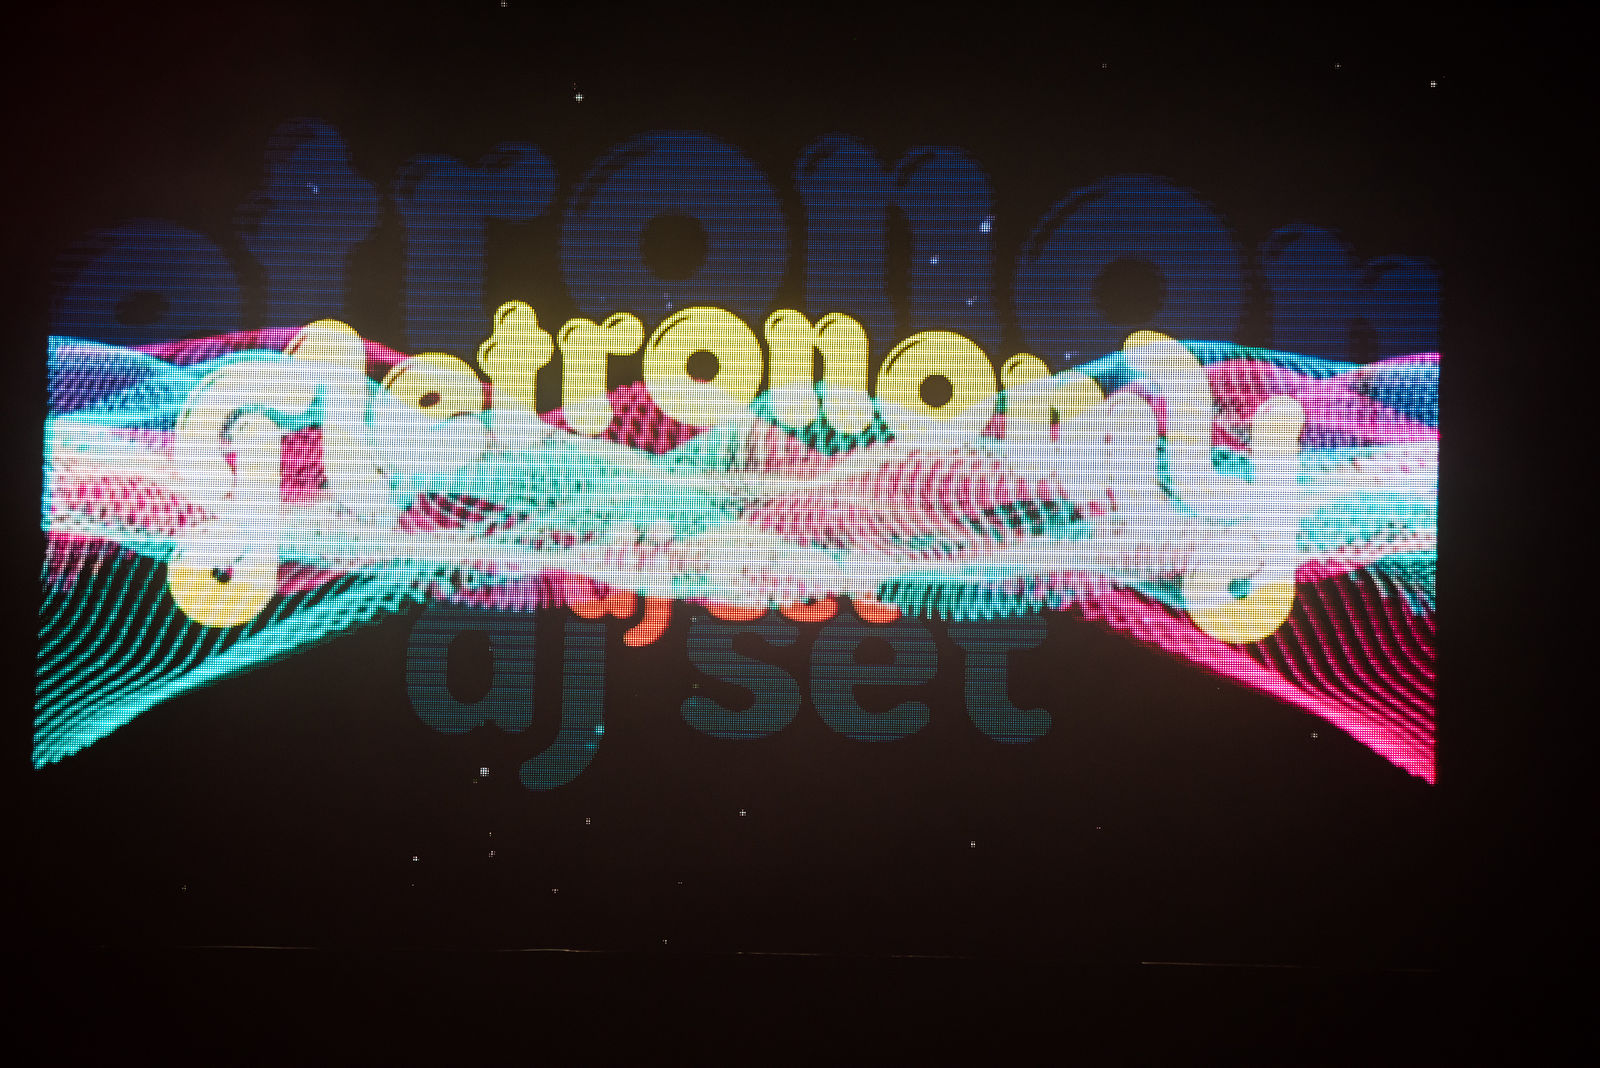 Metronomy (Summer 08 DJ set)